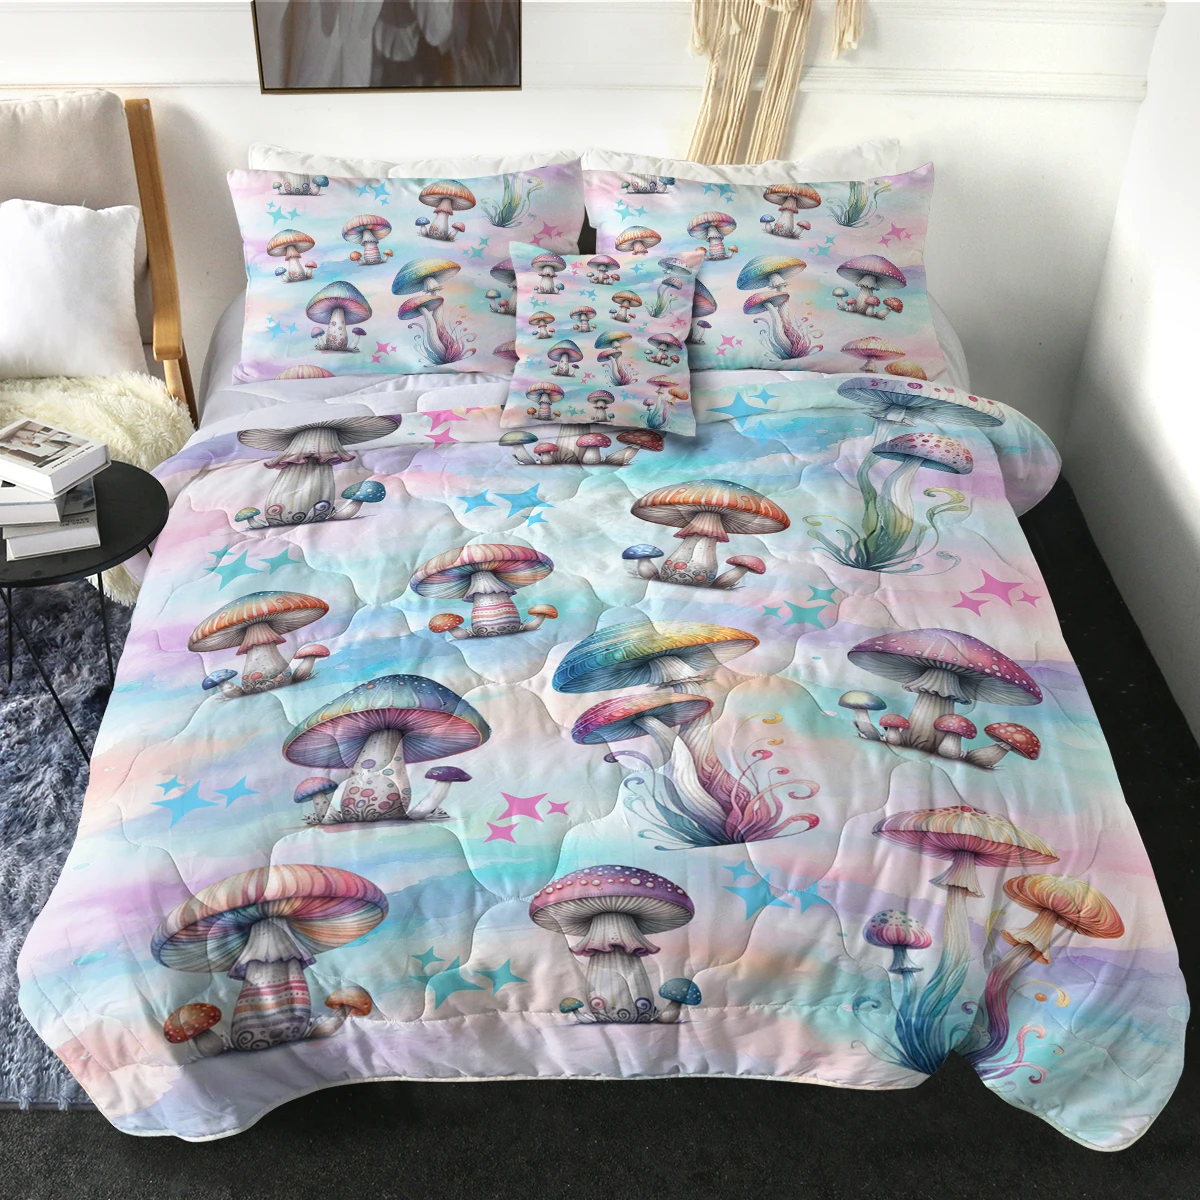 

Уникальный набор одеял в виде гриба с различными цветами, подходящий для всех сезонов, Современная искусственная кожа